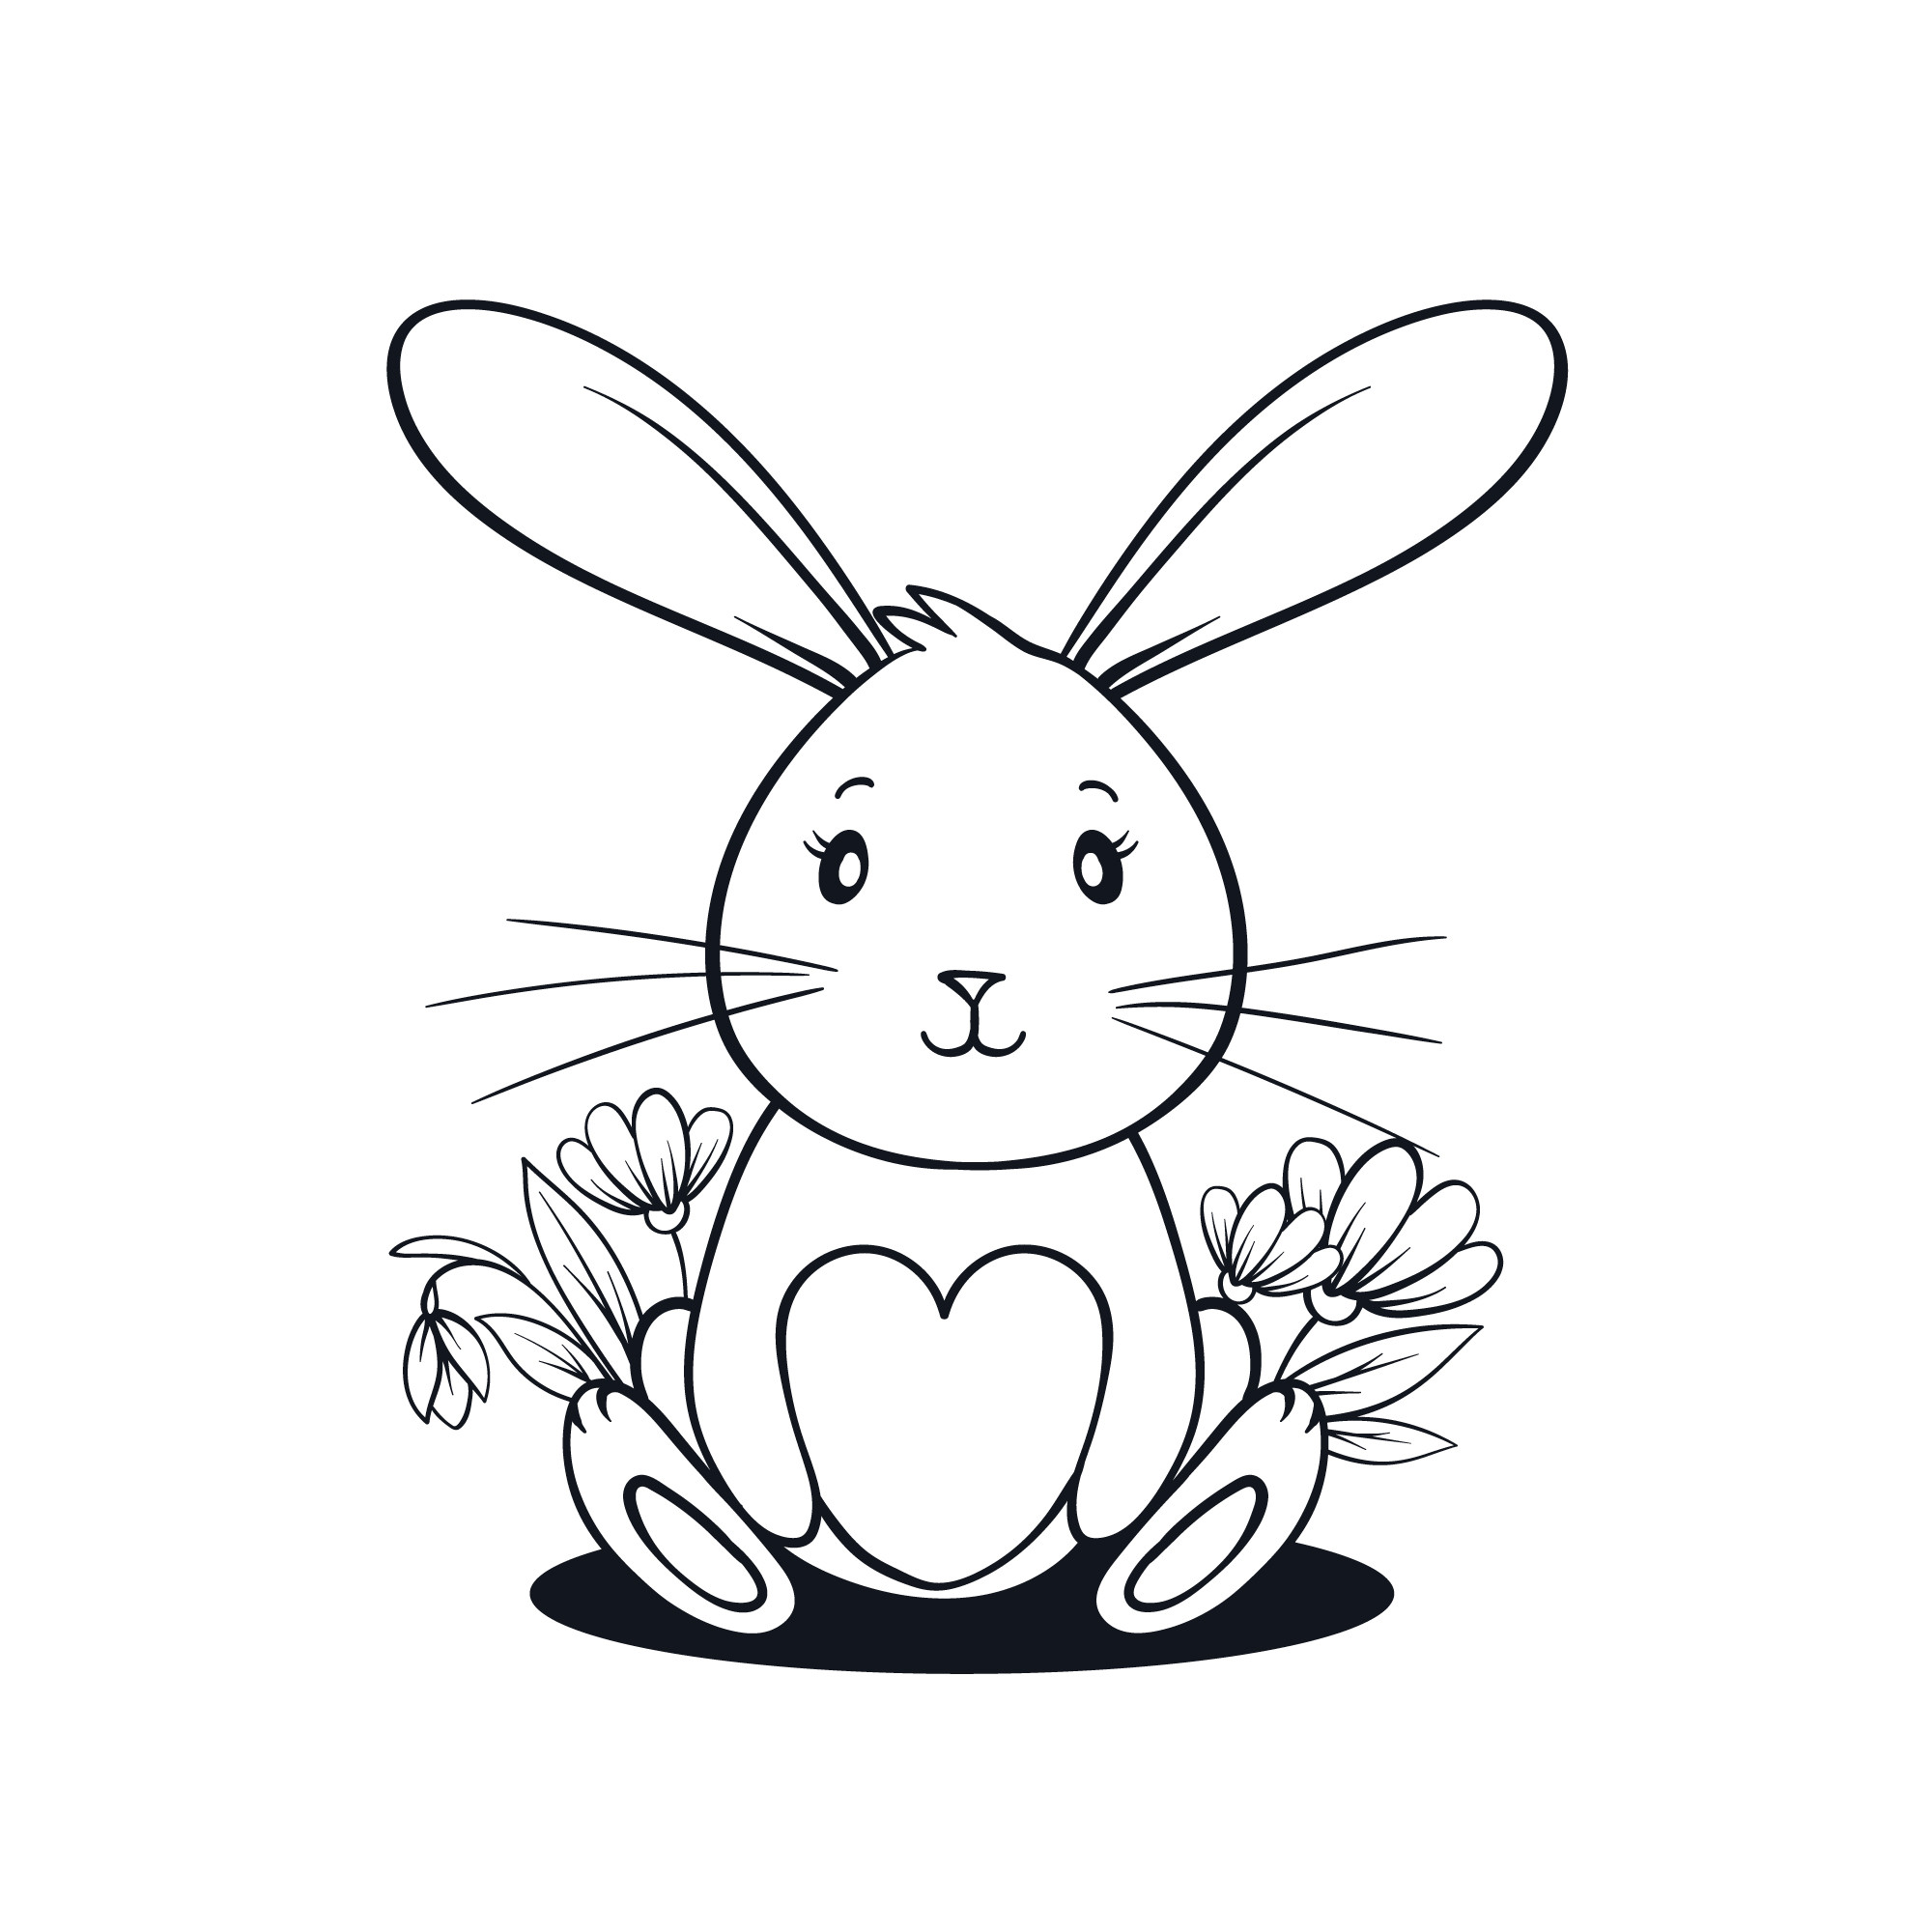 Раскраска для детей: заяц добрый малыш